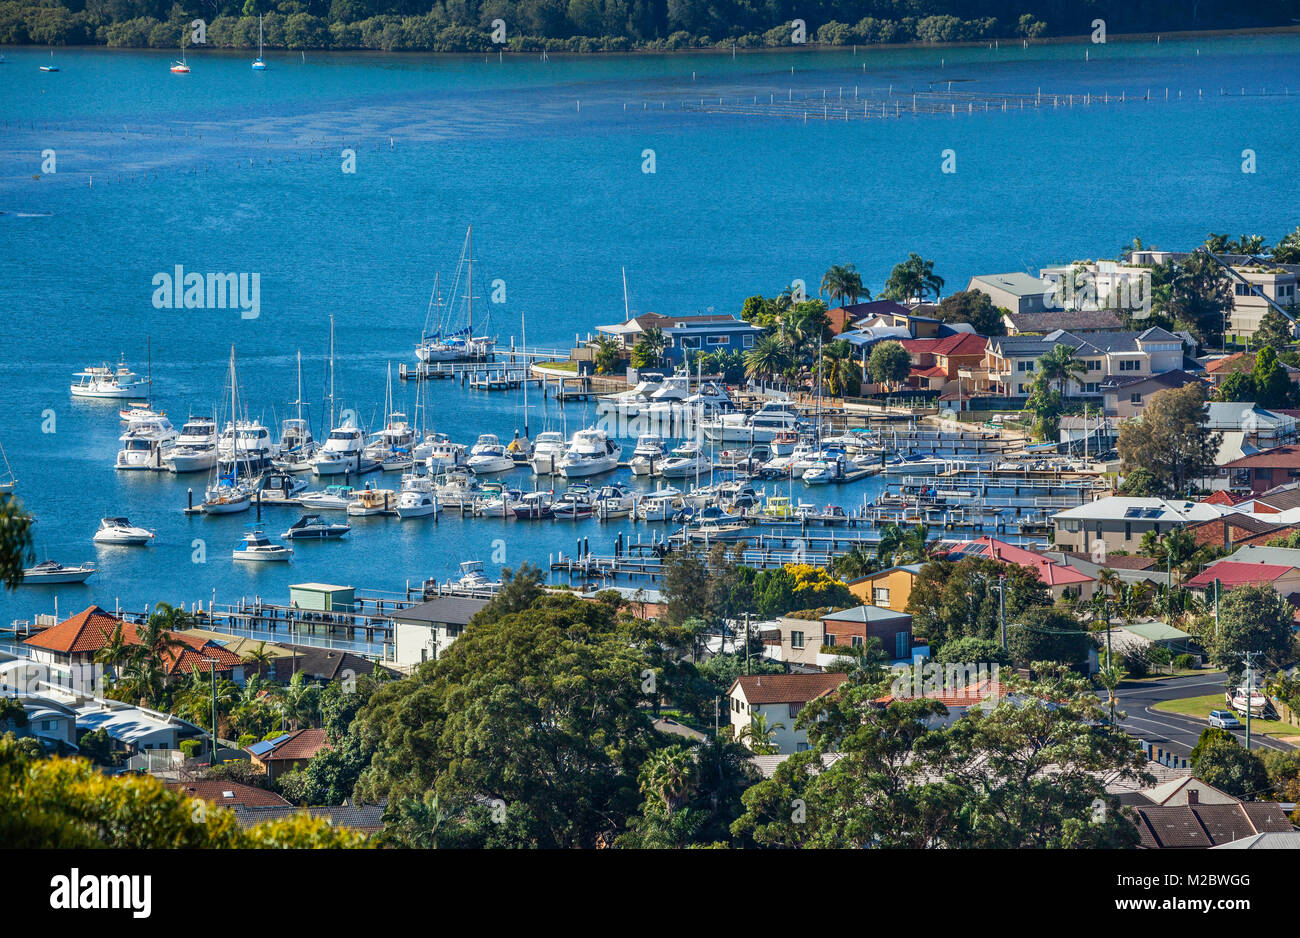 Australien, New South Wales, Central Coast, Brisbane Wasser, Blick auf die Bucht - Bucht wharfes und Marinas Stockfoto